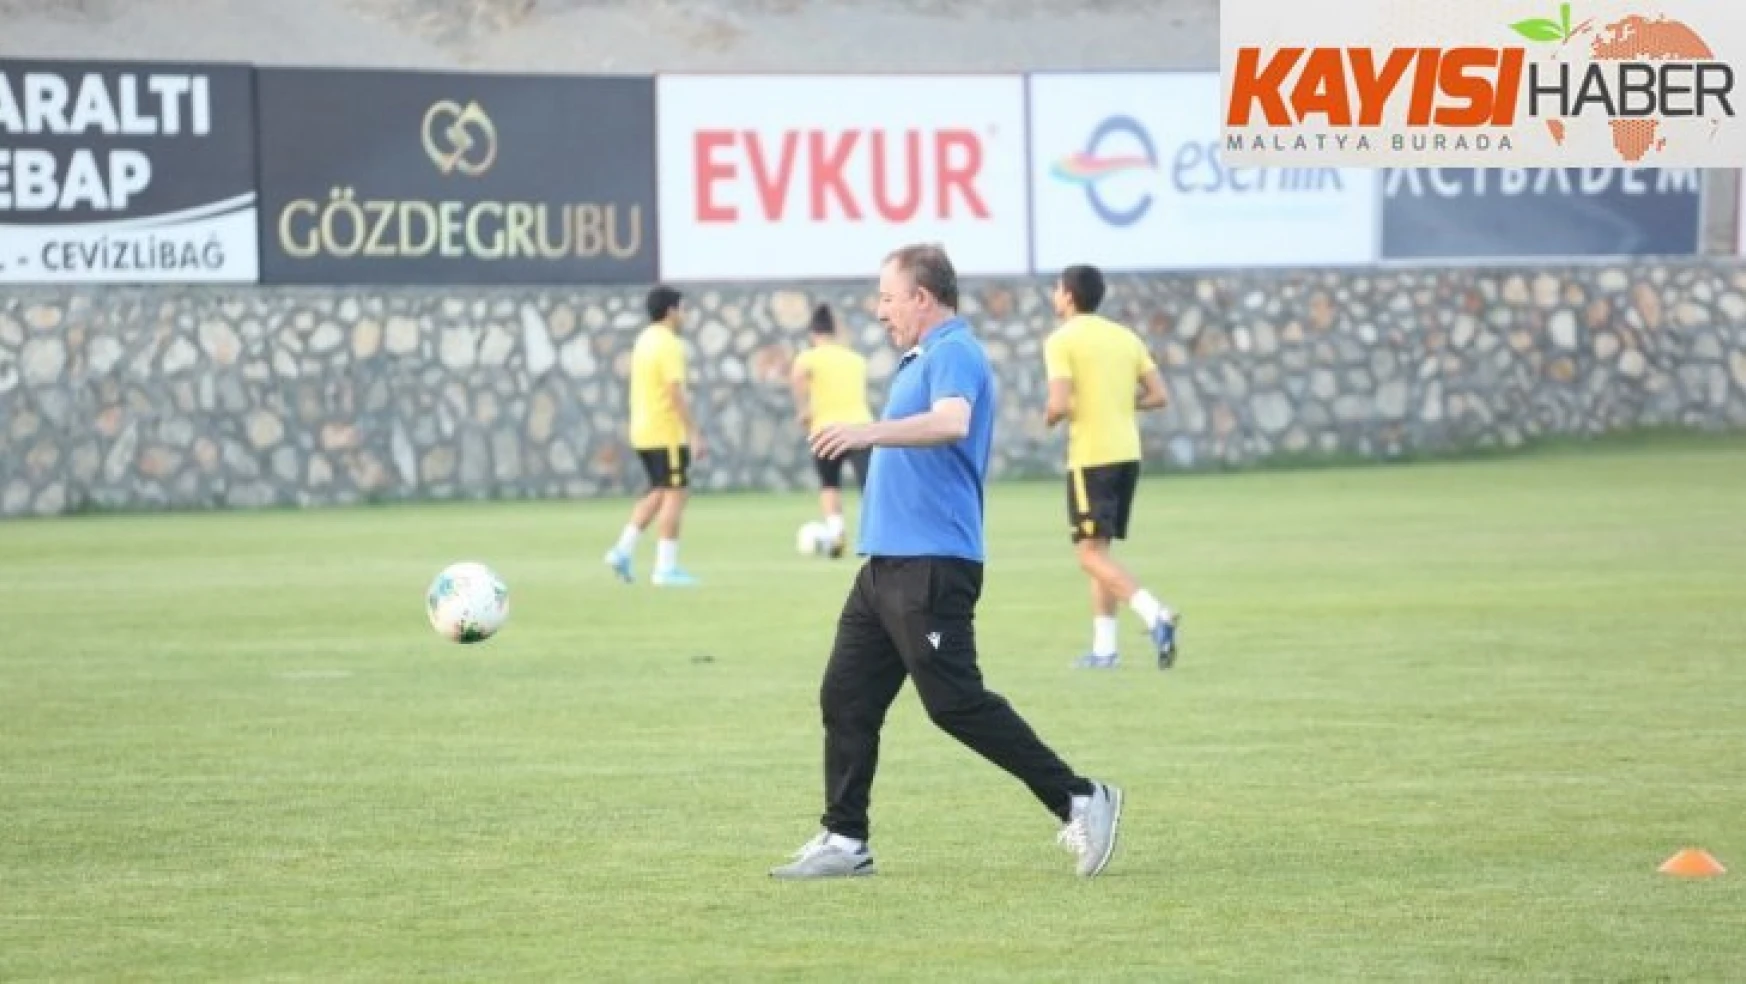 Yeni Malatyaspor'da Trabzon maçı hazırlıkları yarın başlayacak